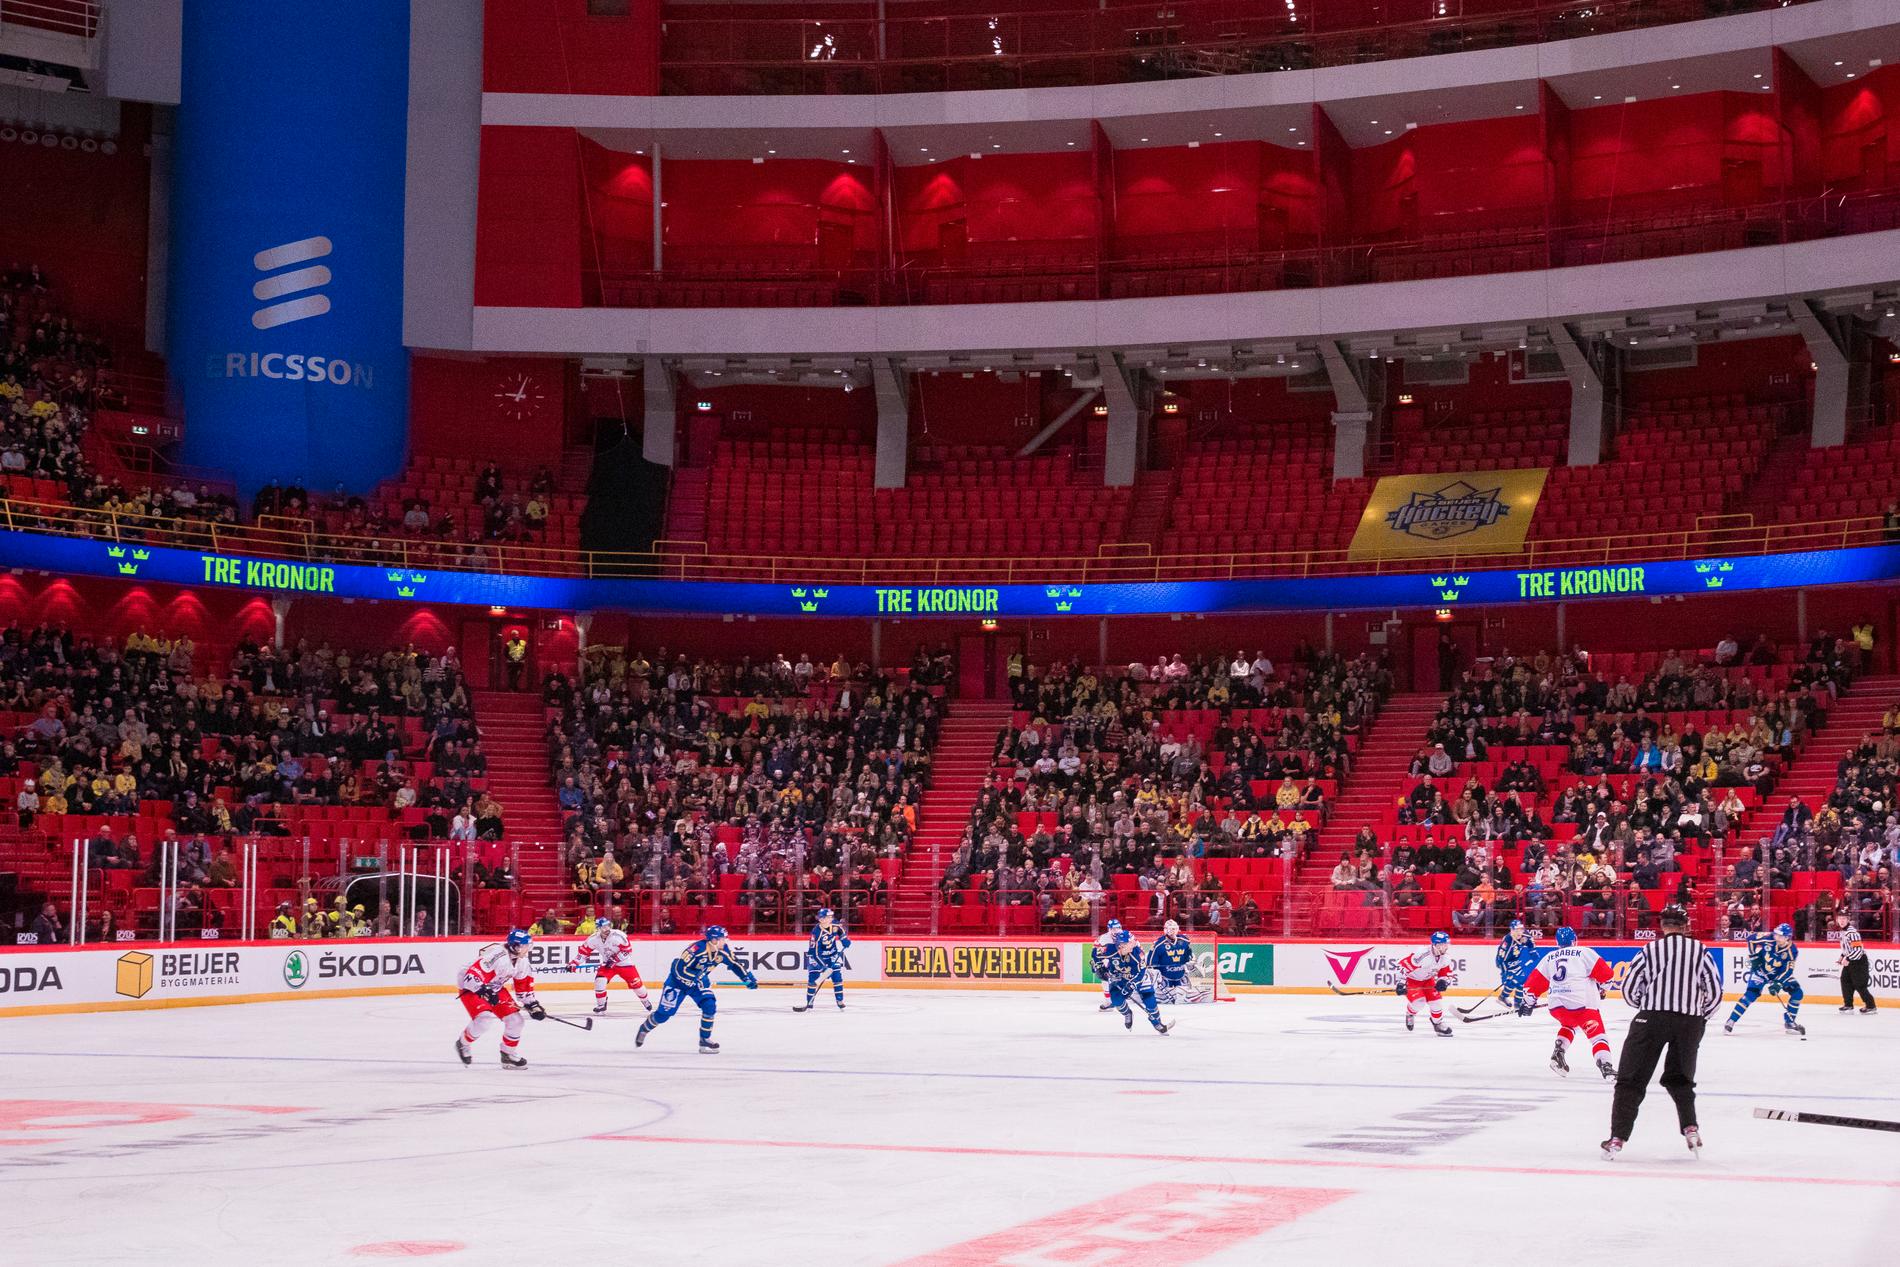 Händelsen ska ha inträffat i samband med mötet mellan Tjeckien och Sverige i Beijer hockey games i februari.